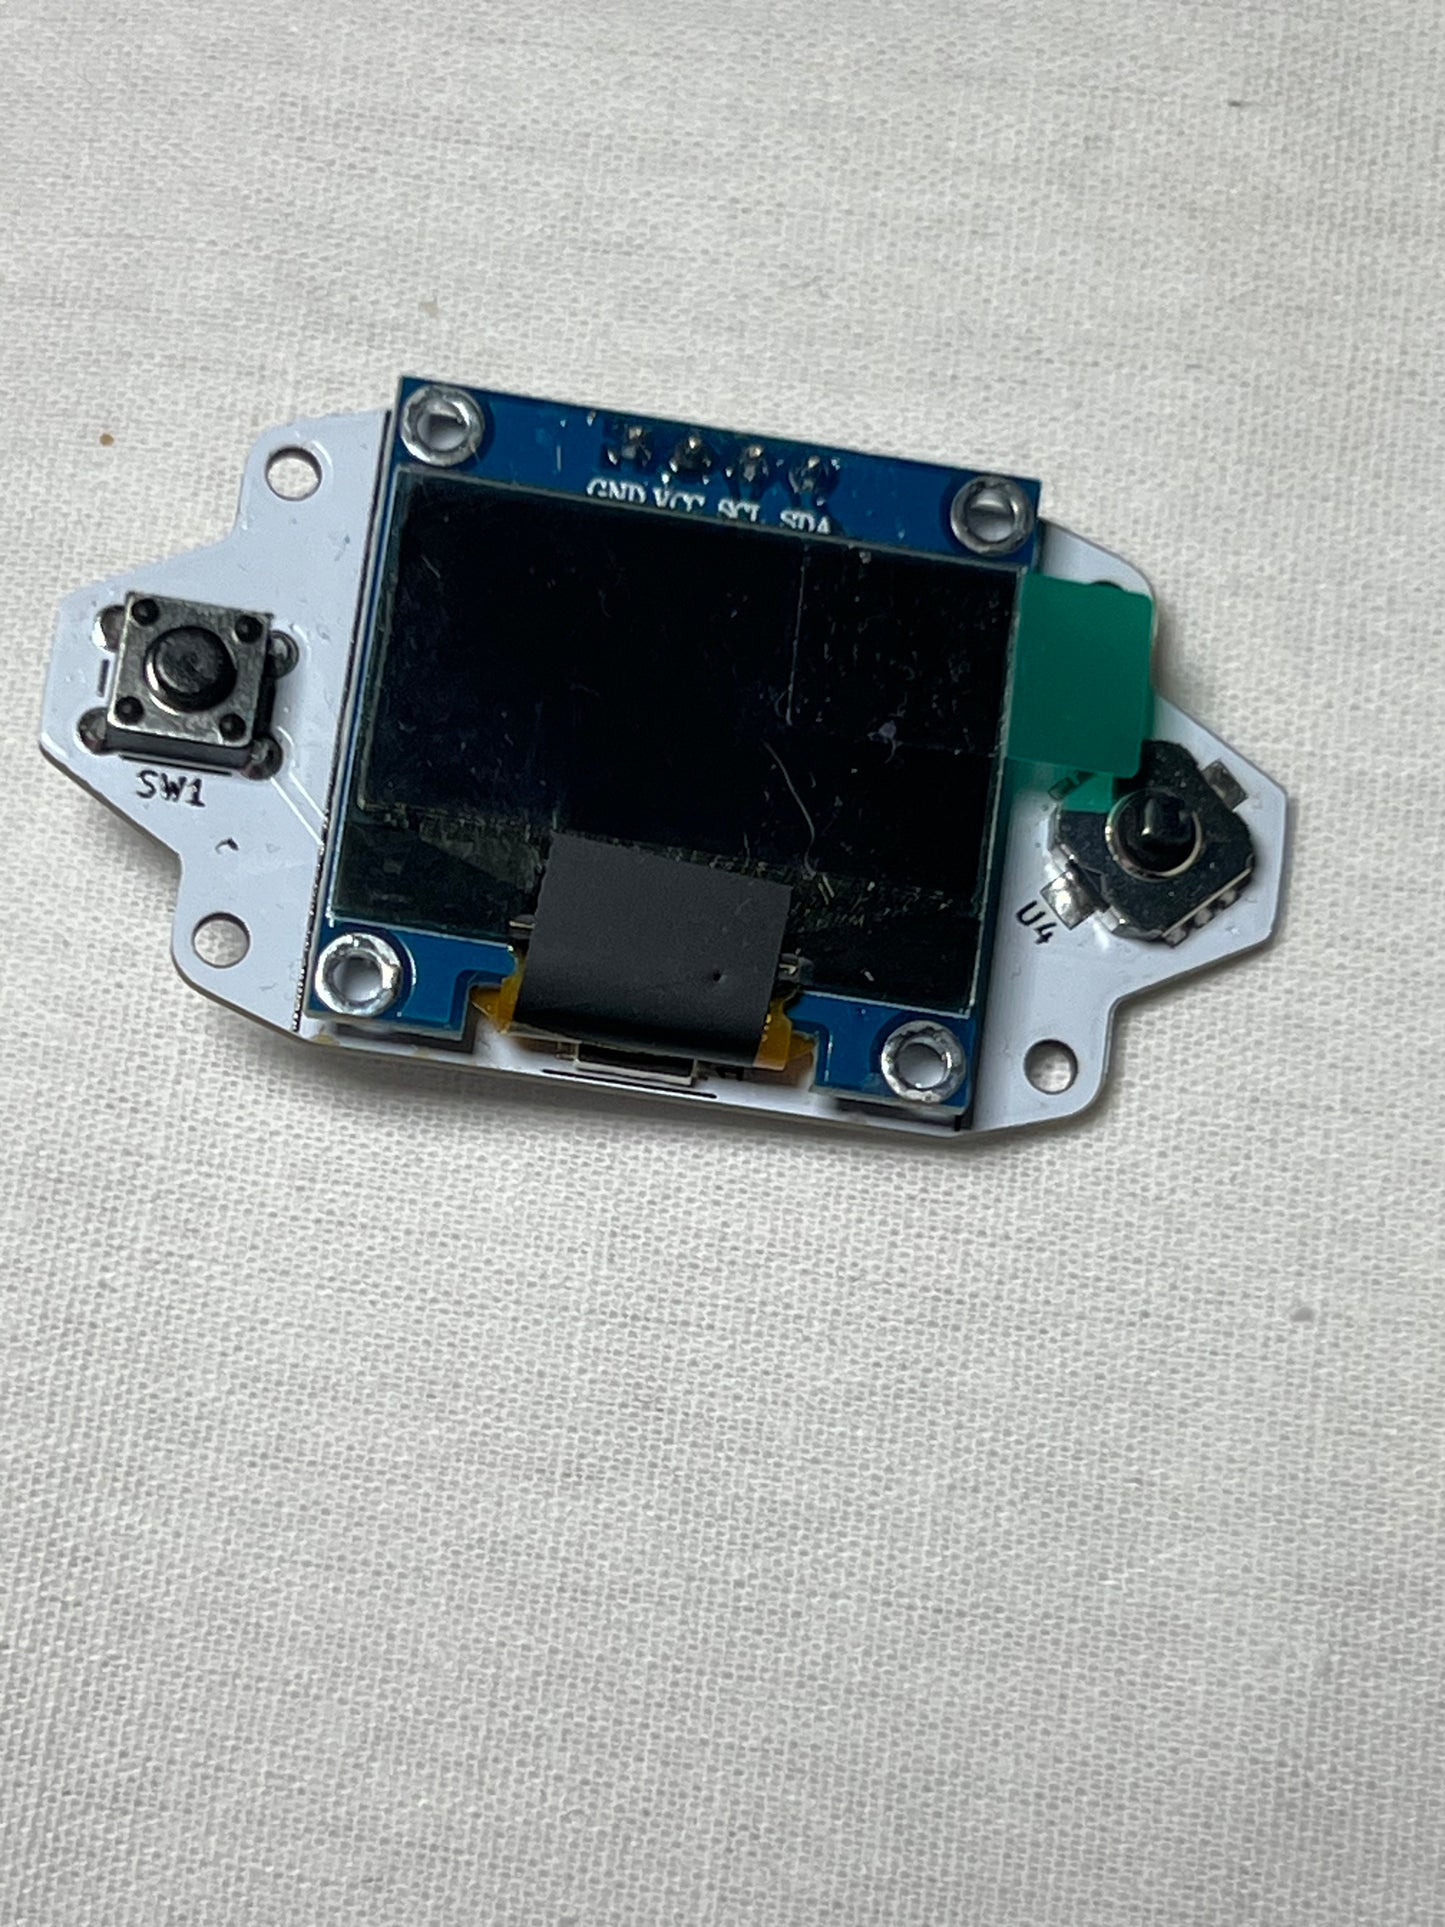 Tiny V0 Micro Display